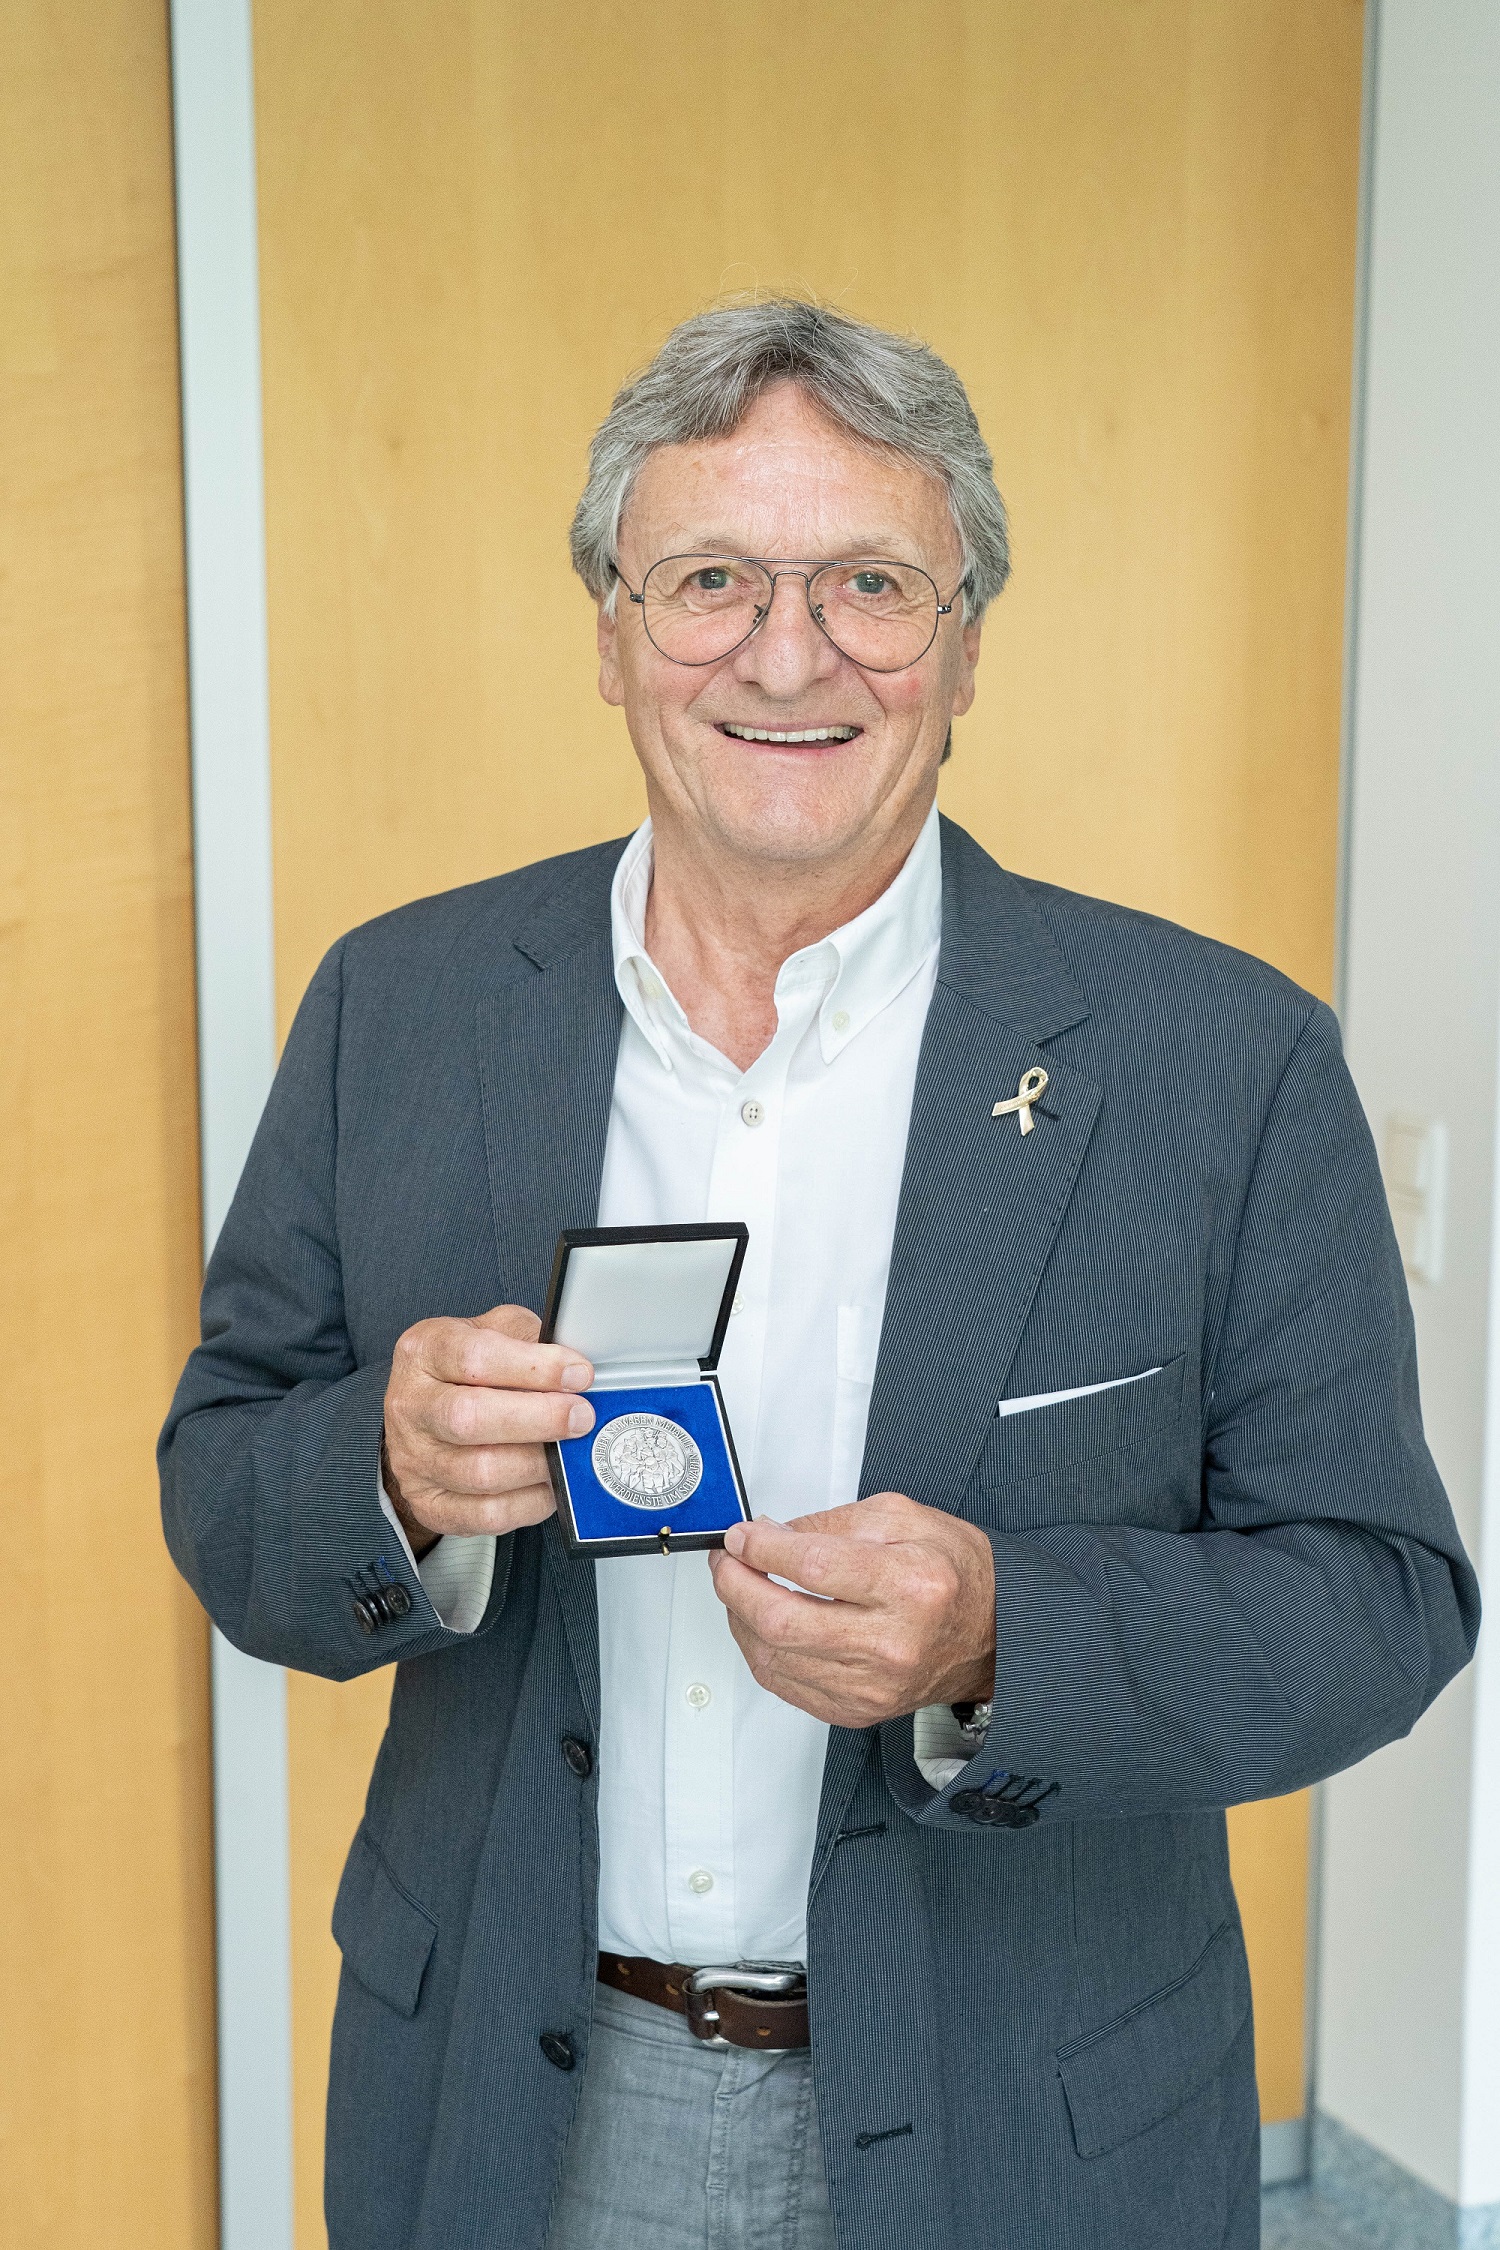 Für seine Verdienste um das Gemeinwohl in Schwaben hat der Bezirk Dr. Rainer Karg mit der Sieben-Schwaben-Medaille ausgezeichnet. Fotograf: Daniel Beiter